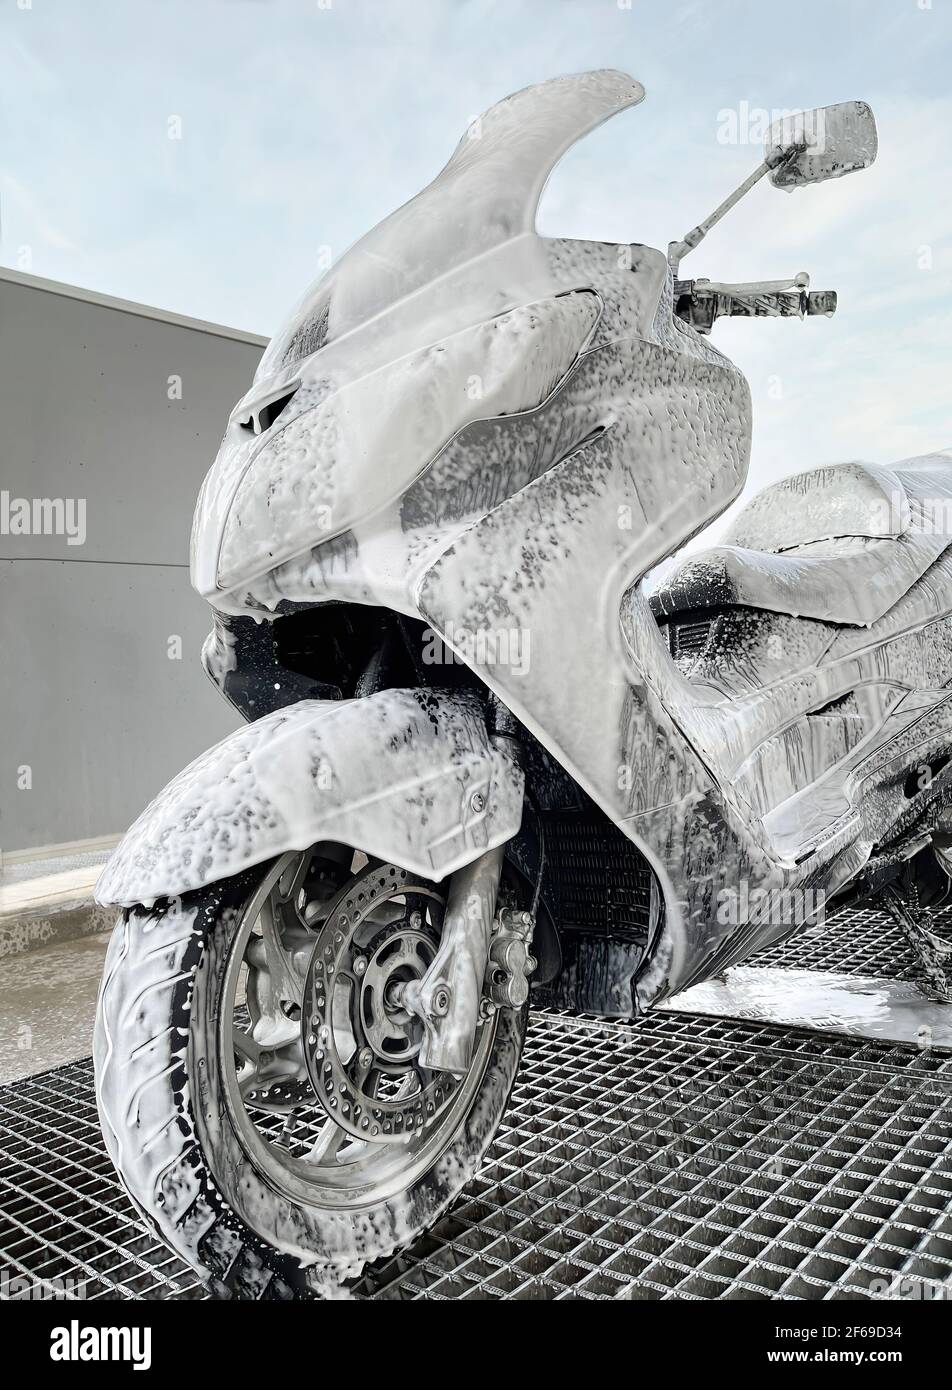 Limpieza de motos fotografías e imágenes de alta resolución - Alamy